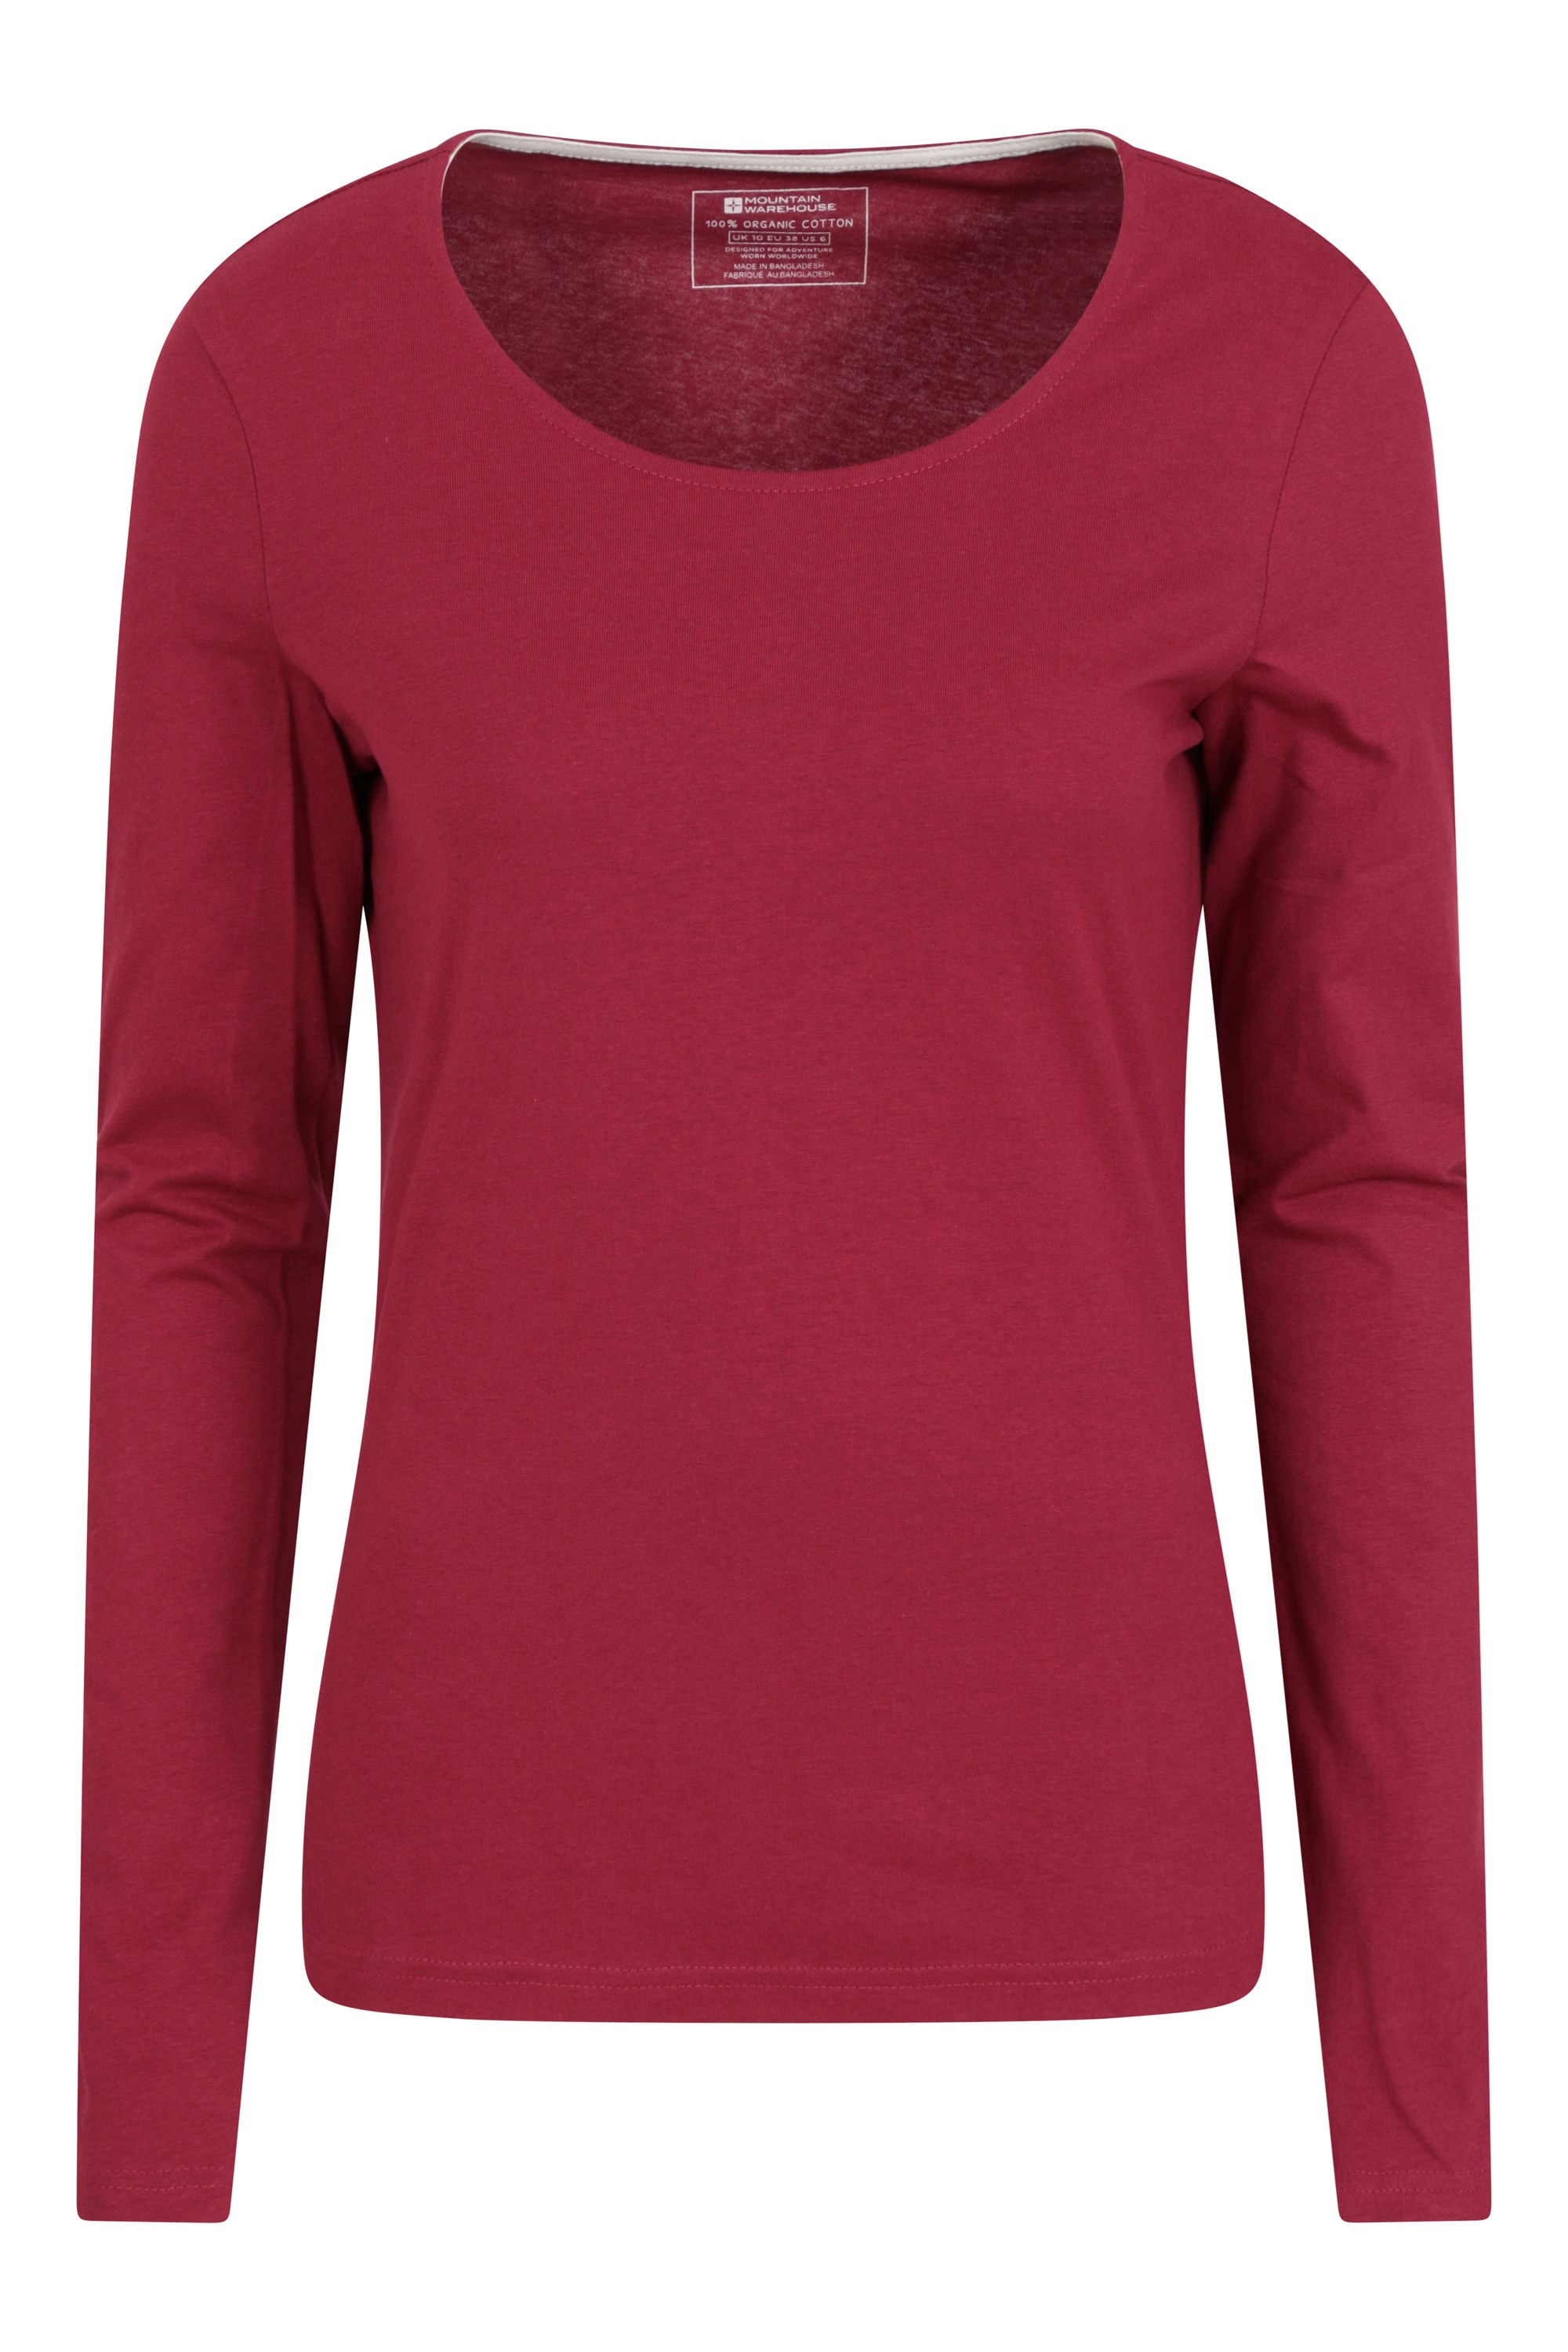 Eden Womens Organic Round Neck T-Shirt - Red